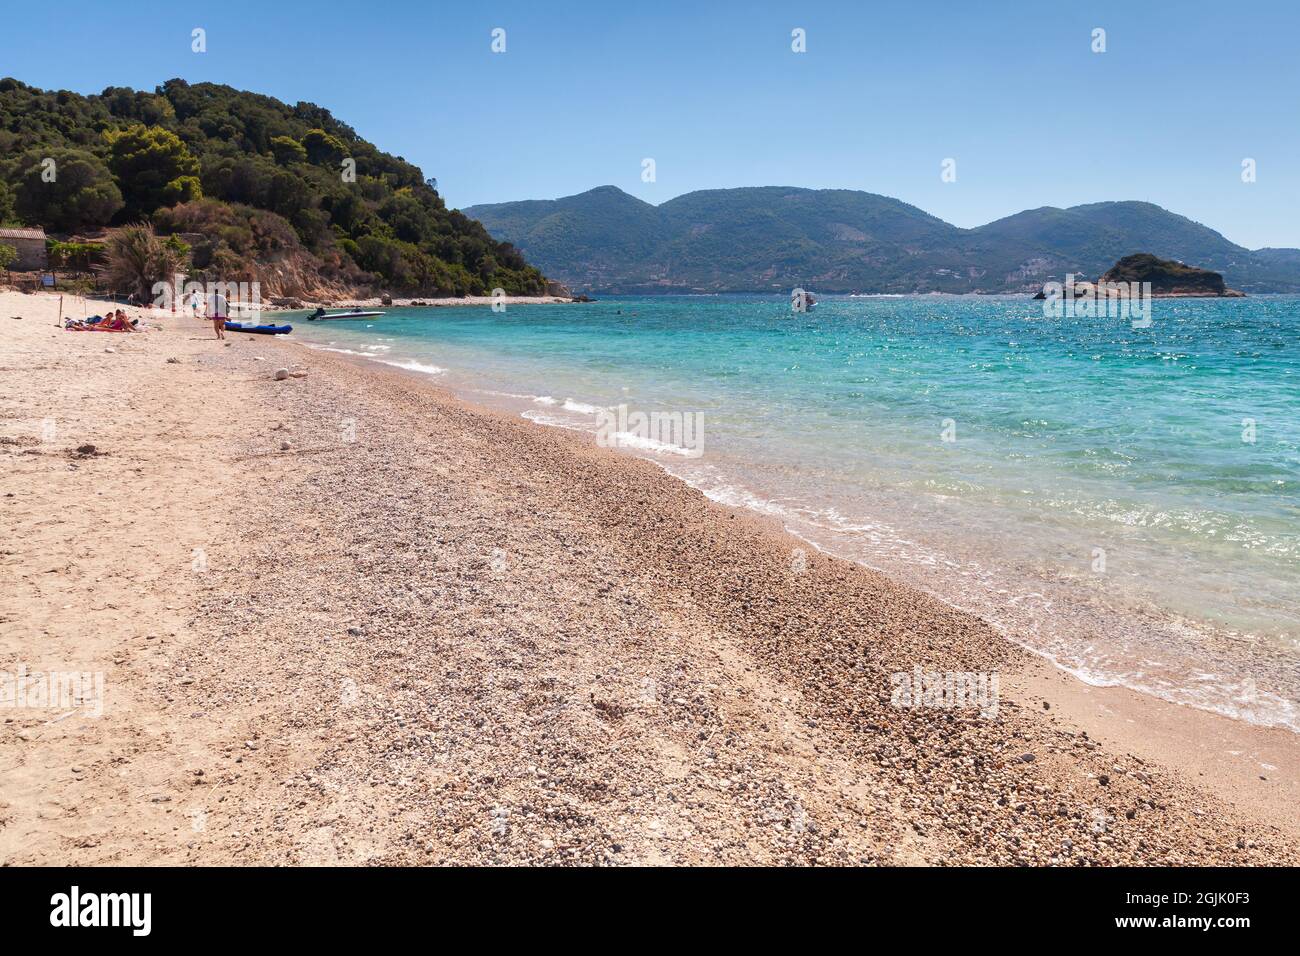 Plage grecque par une belle journée d'été. Île de Zakynthos, Grèce Banque D'Images